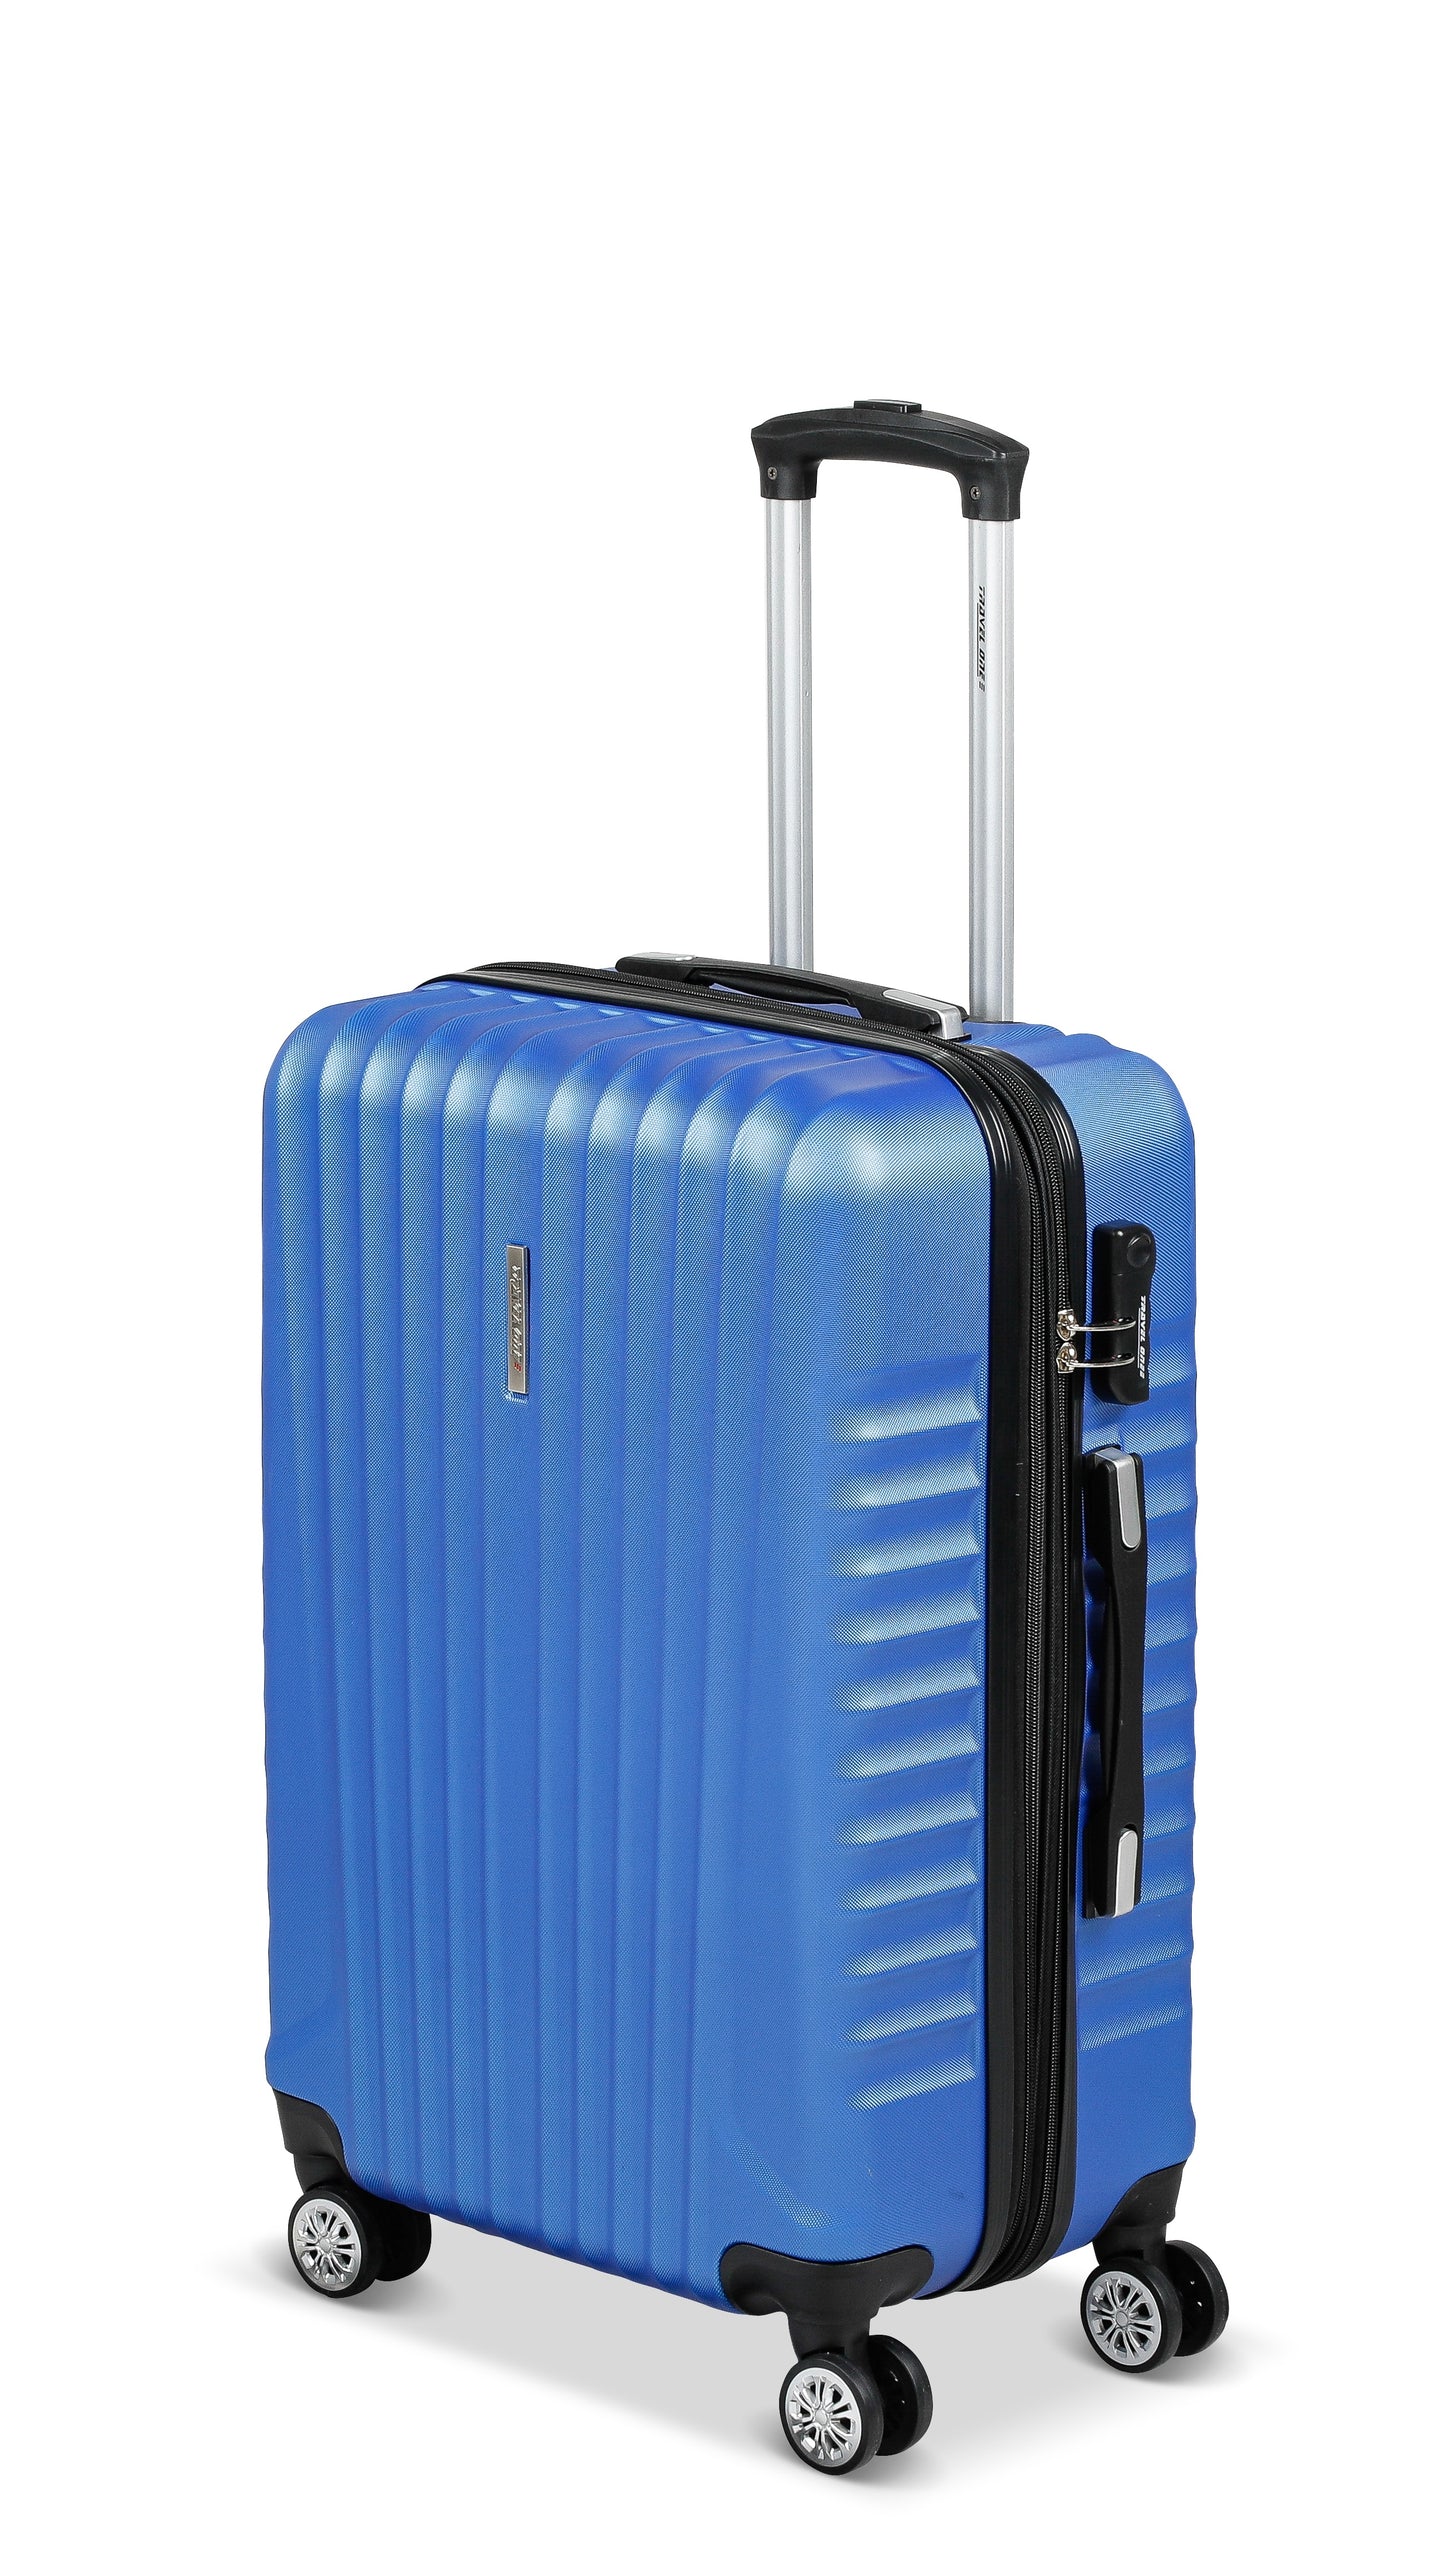 Valise Travel One Bleu Taille Moyenne 66cm extensible vue de profil